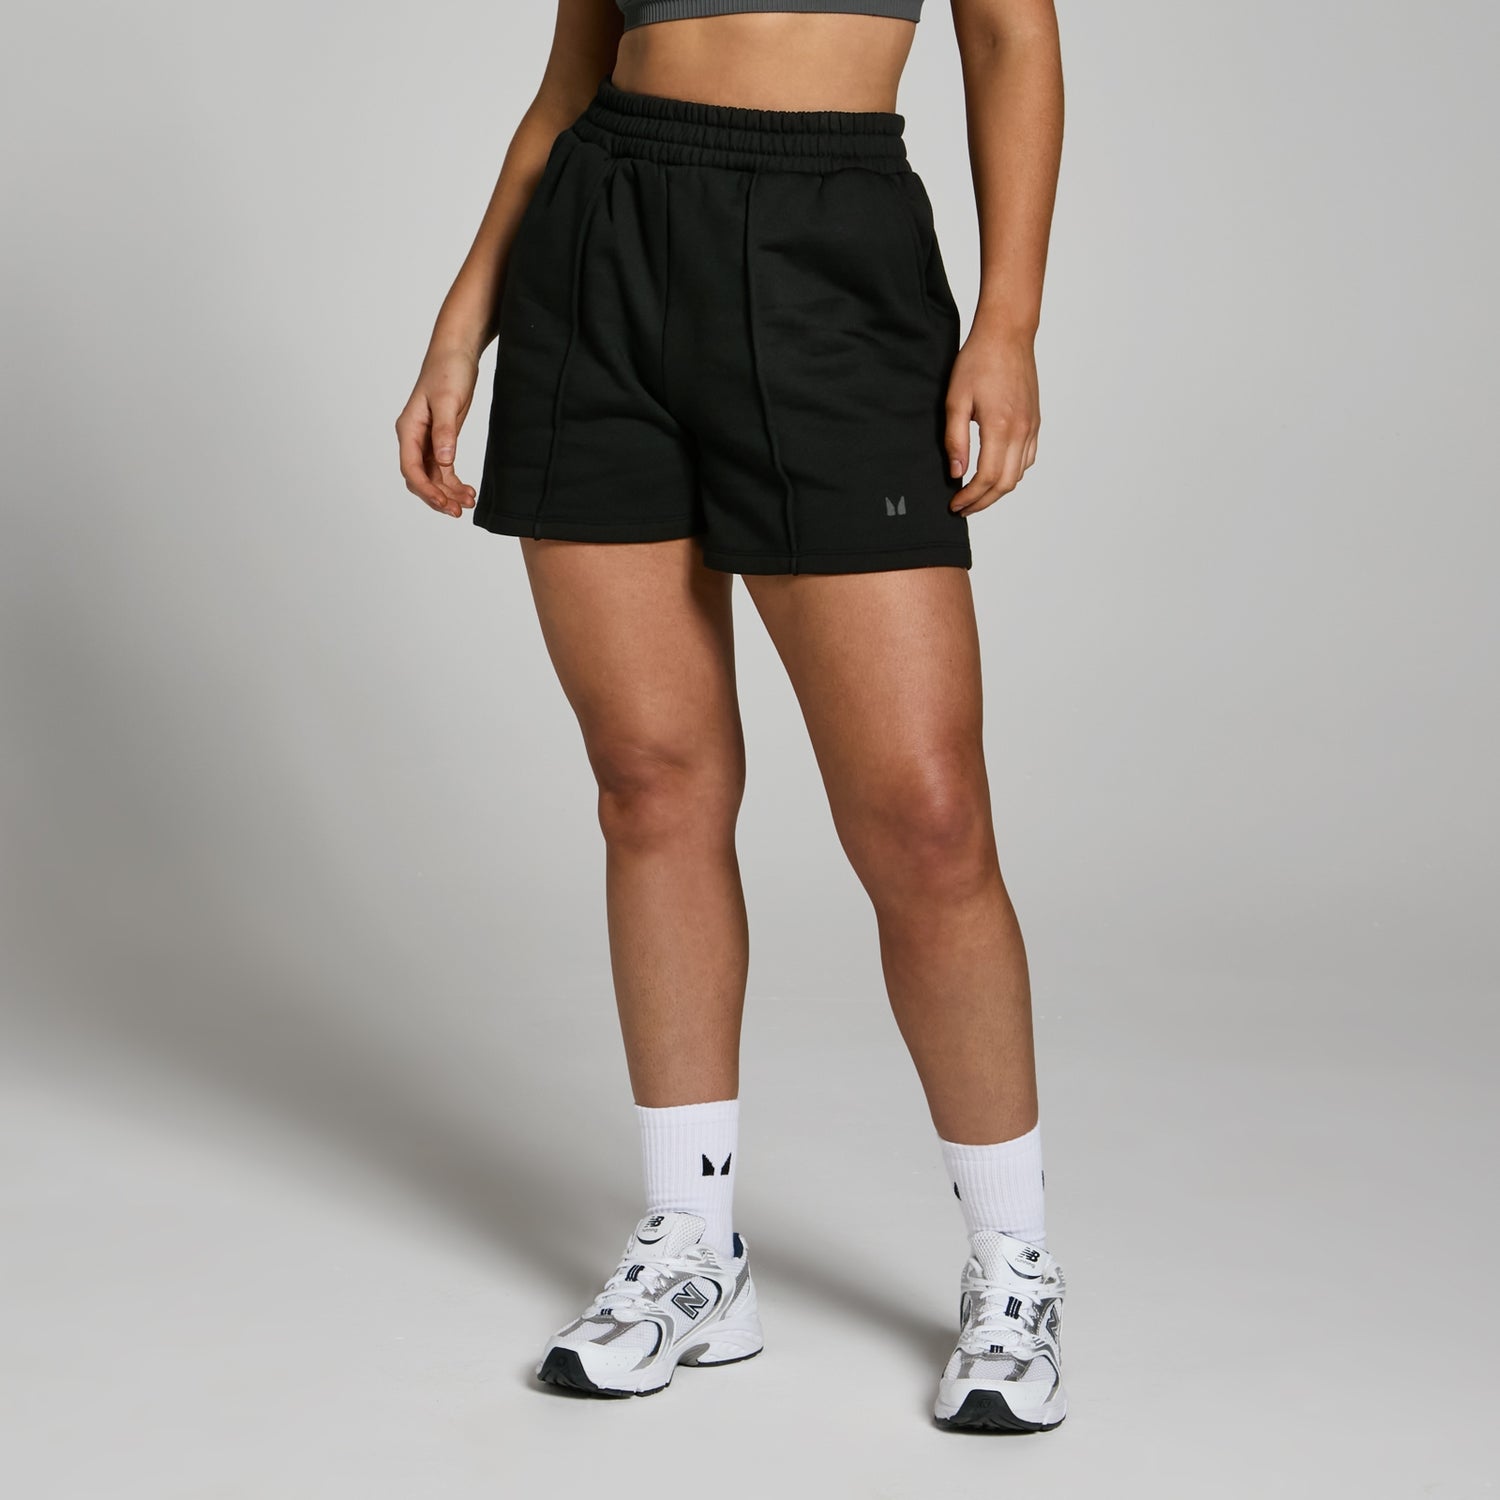 MP Women's Lifestyle Heavyweight Sweat Shorts - Black - XS